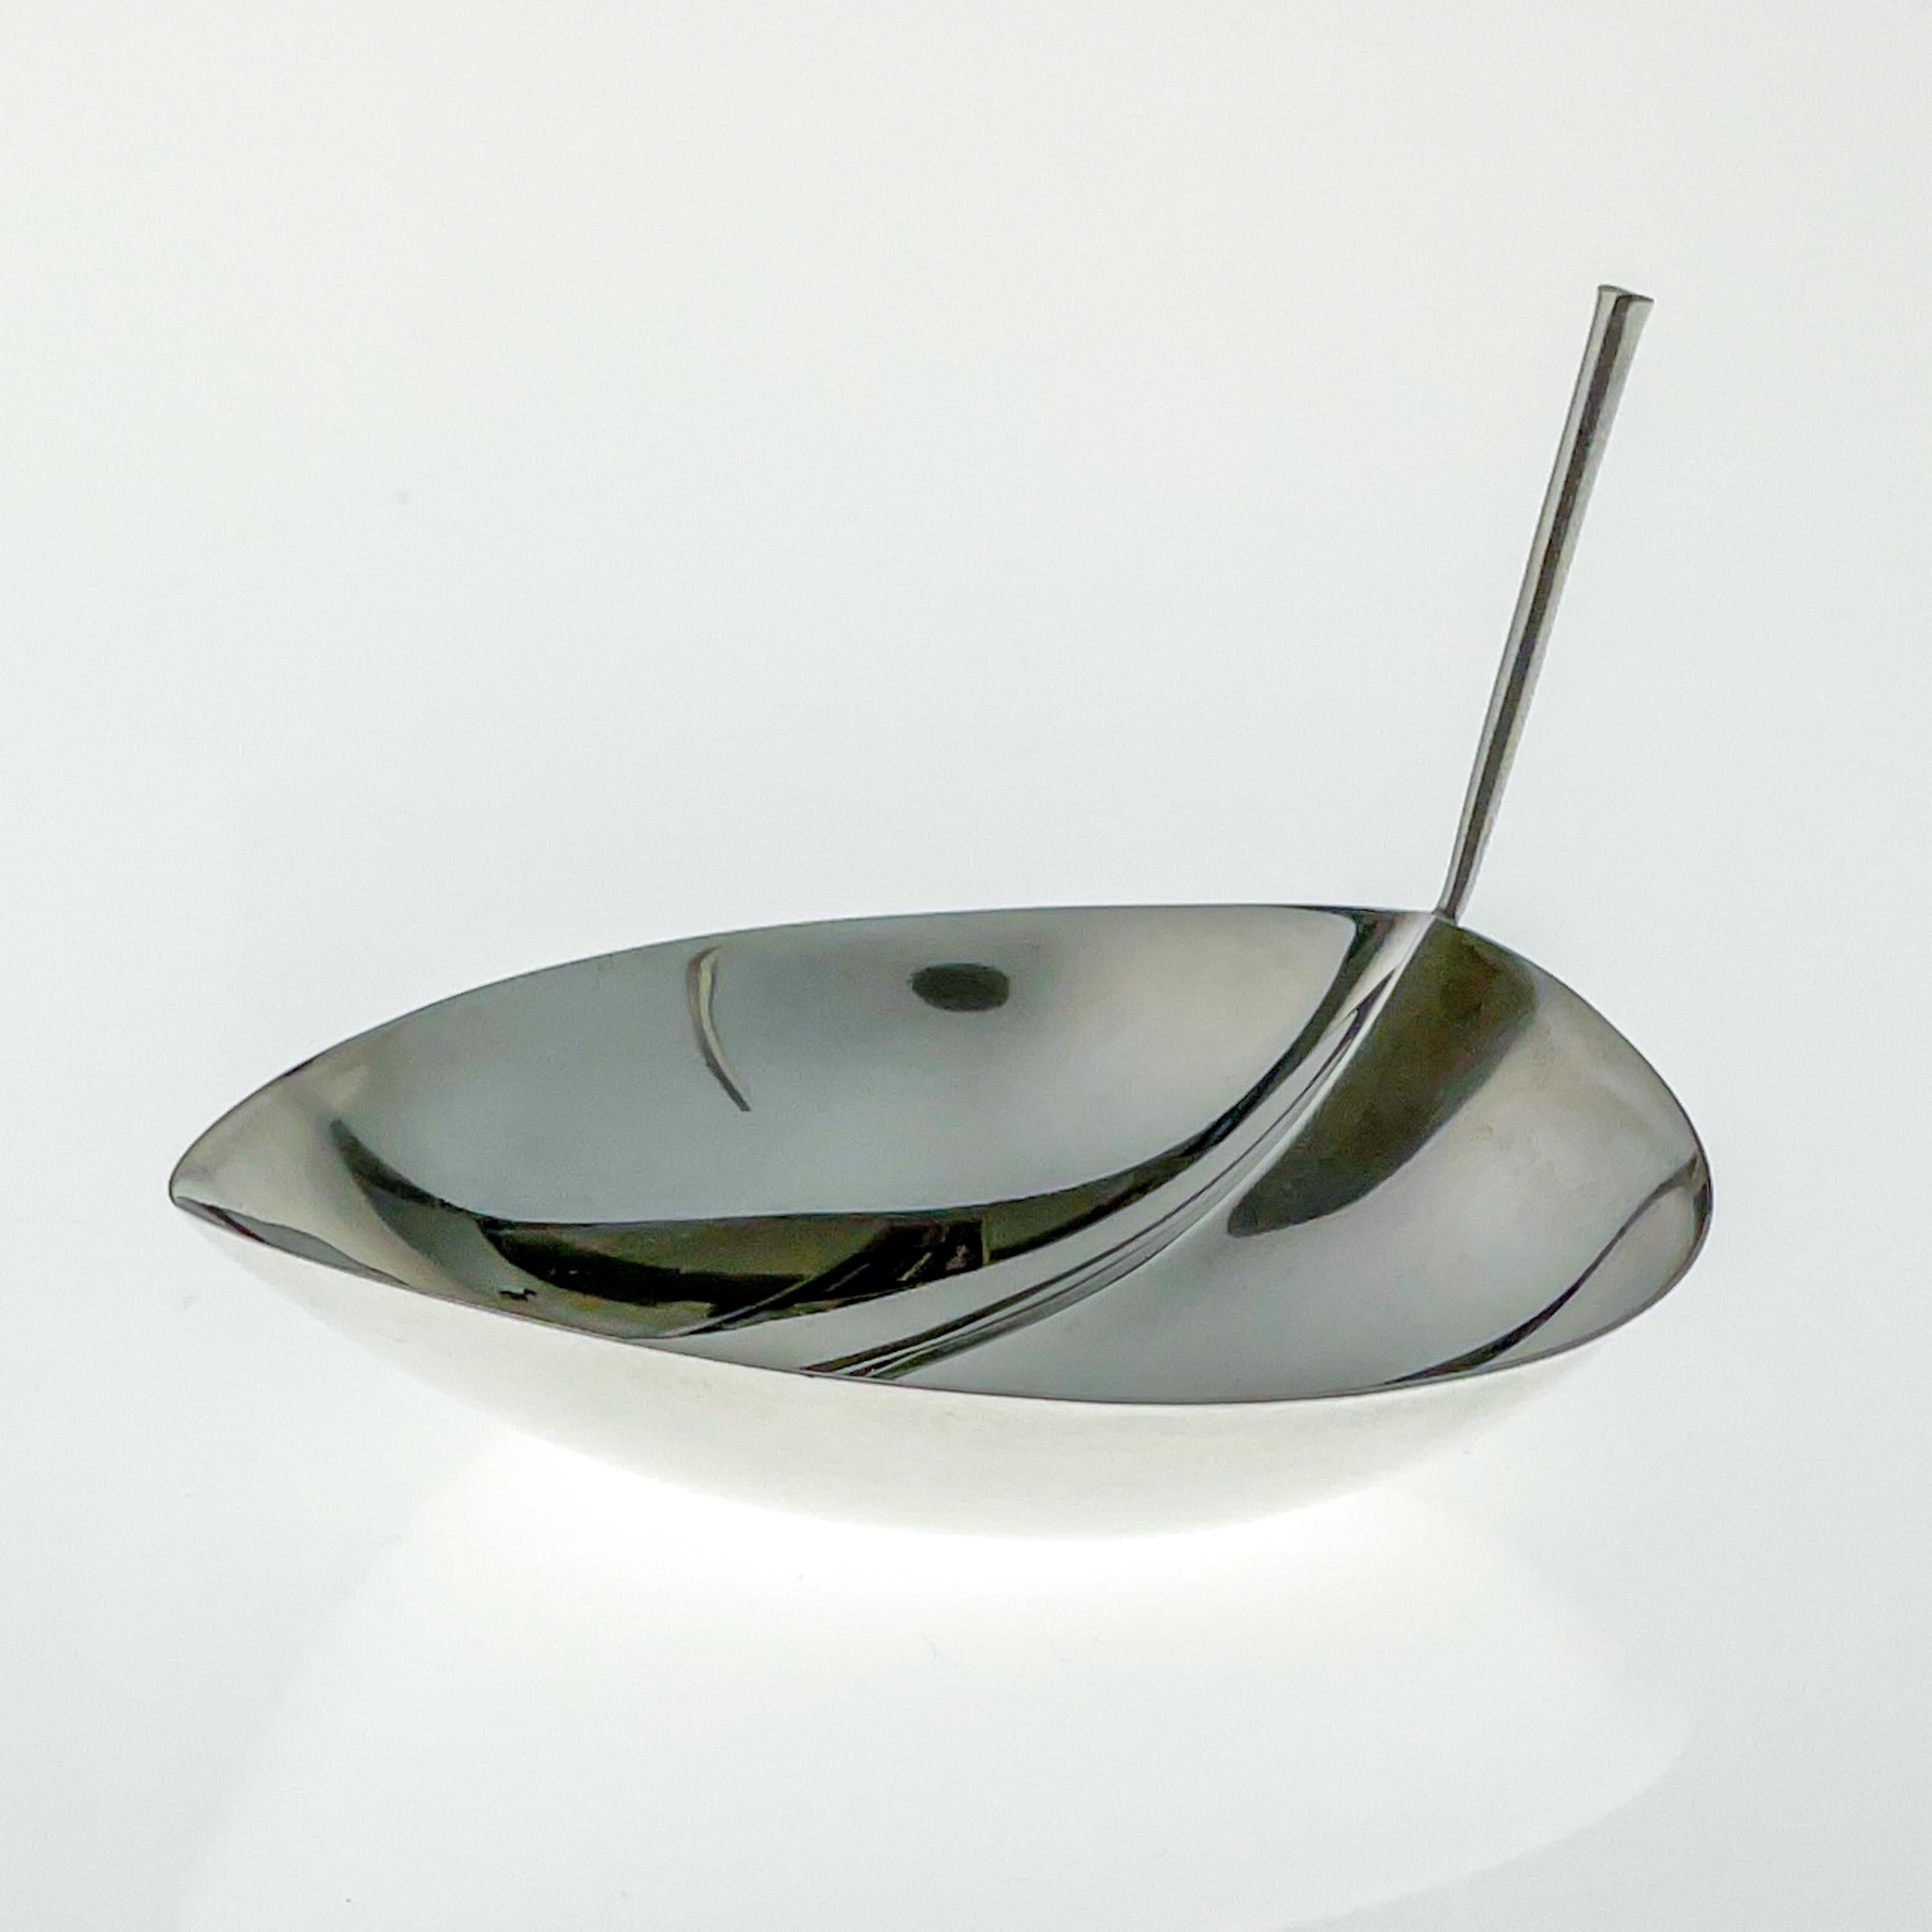 Tapio Wirkkala - Sterling silver leaf-shaped bowl, model TW 4 - Kultakeskus Oy, Finland 1963

Artist
Tapio Wirkkala (1915 Hanko, Finland - 1985 Helsinki, Finland) A giant of Finnish design, Wirkkala was an artist of great diversity for whom no